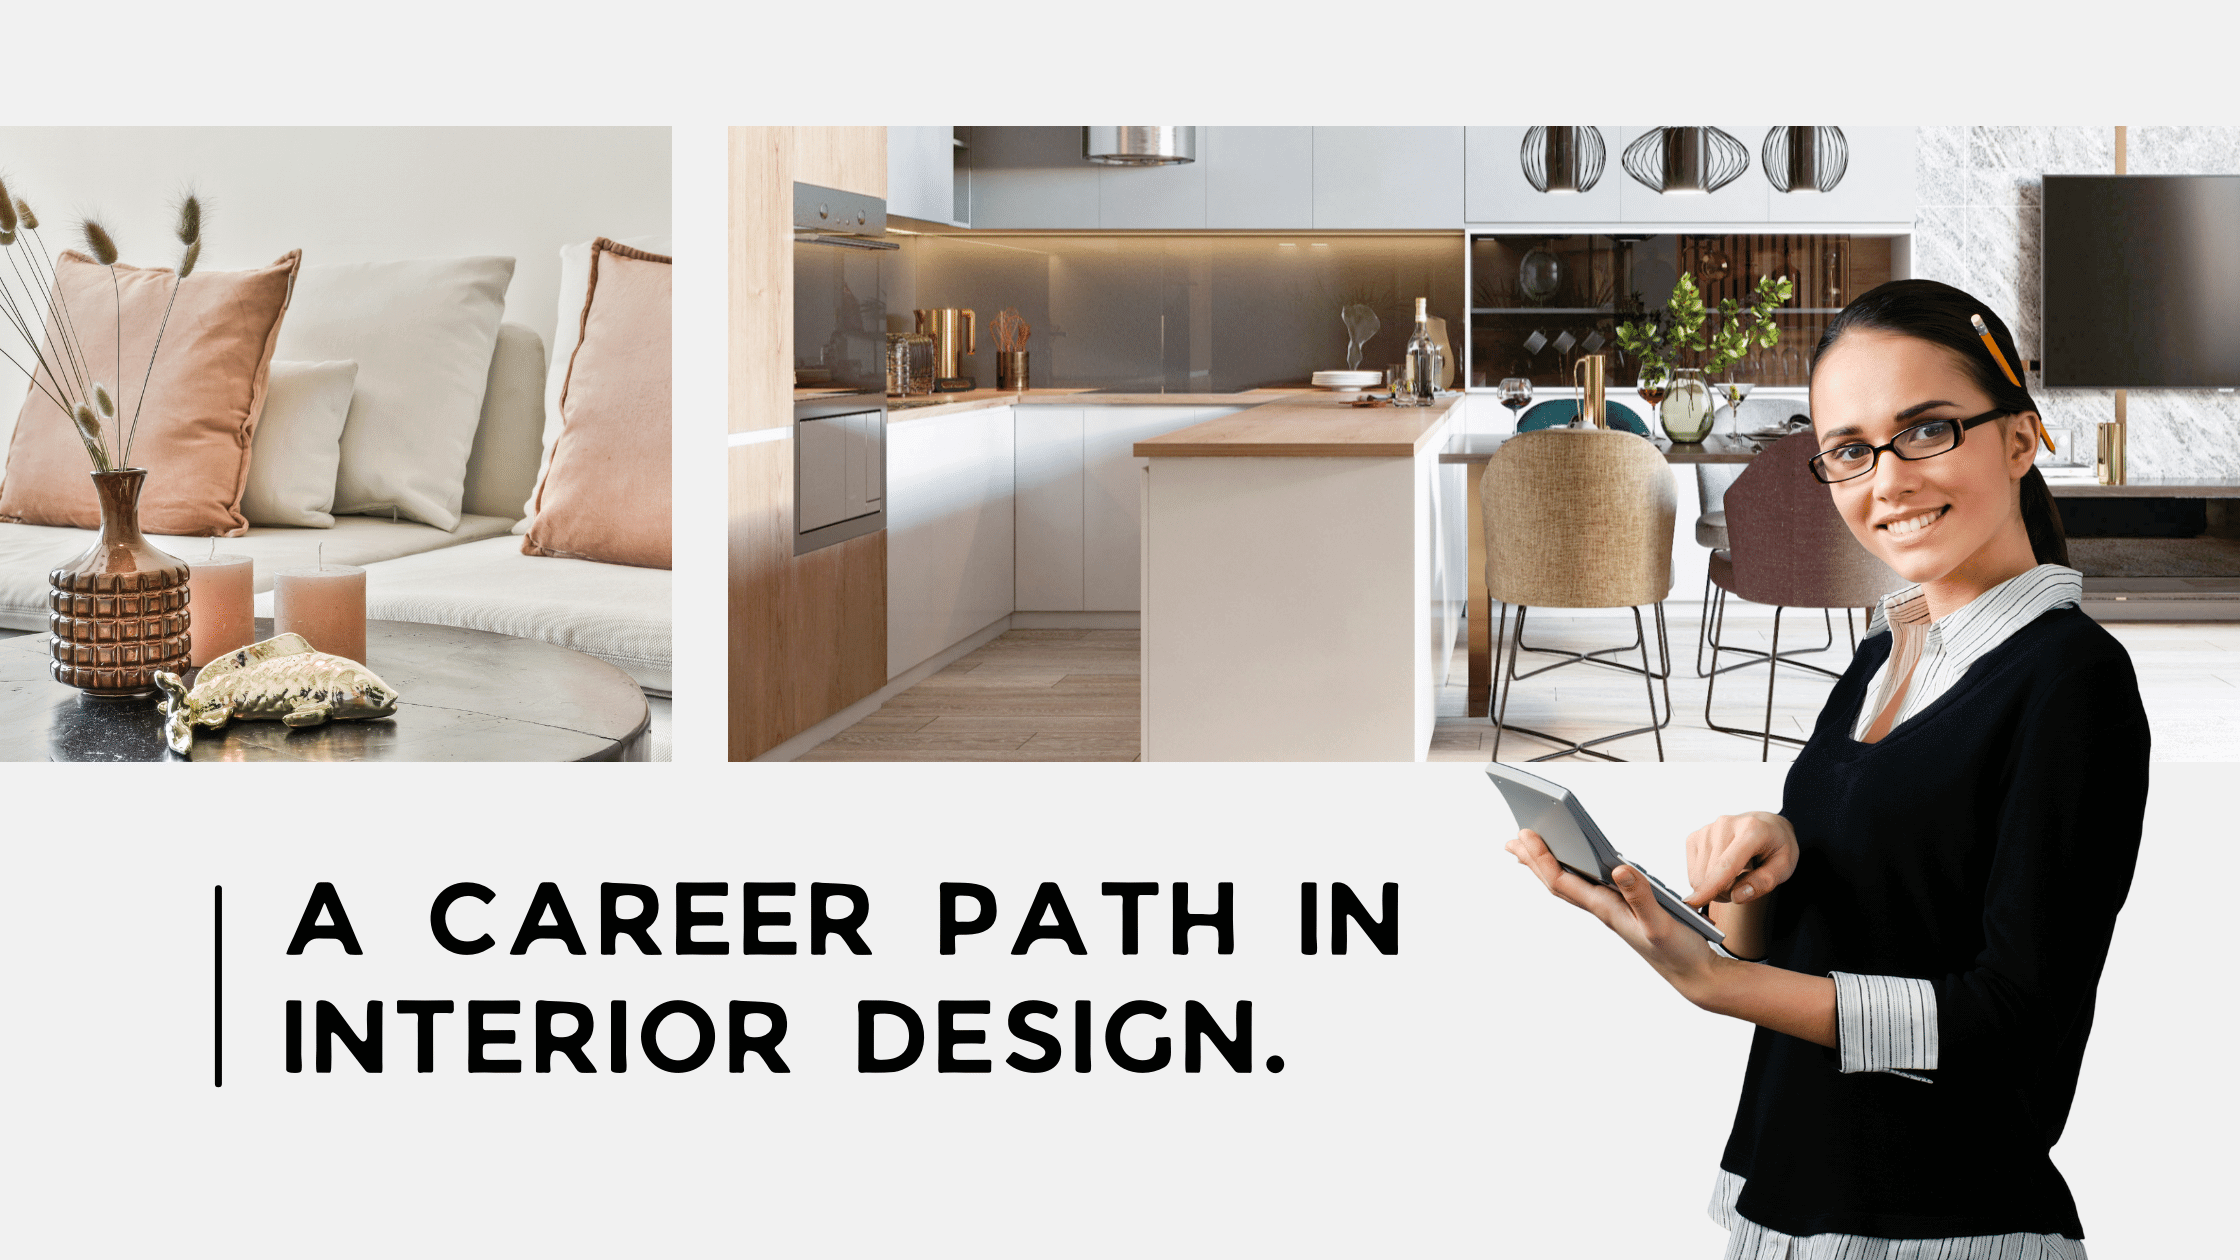 interior designer focusing on her career path in interior design